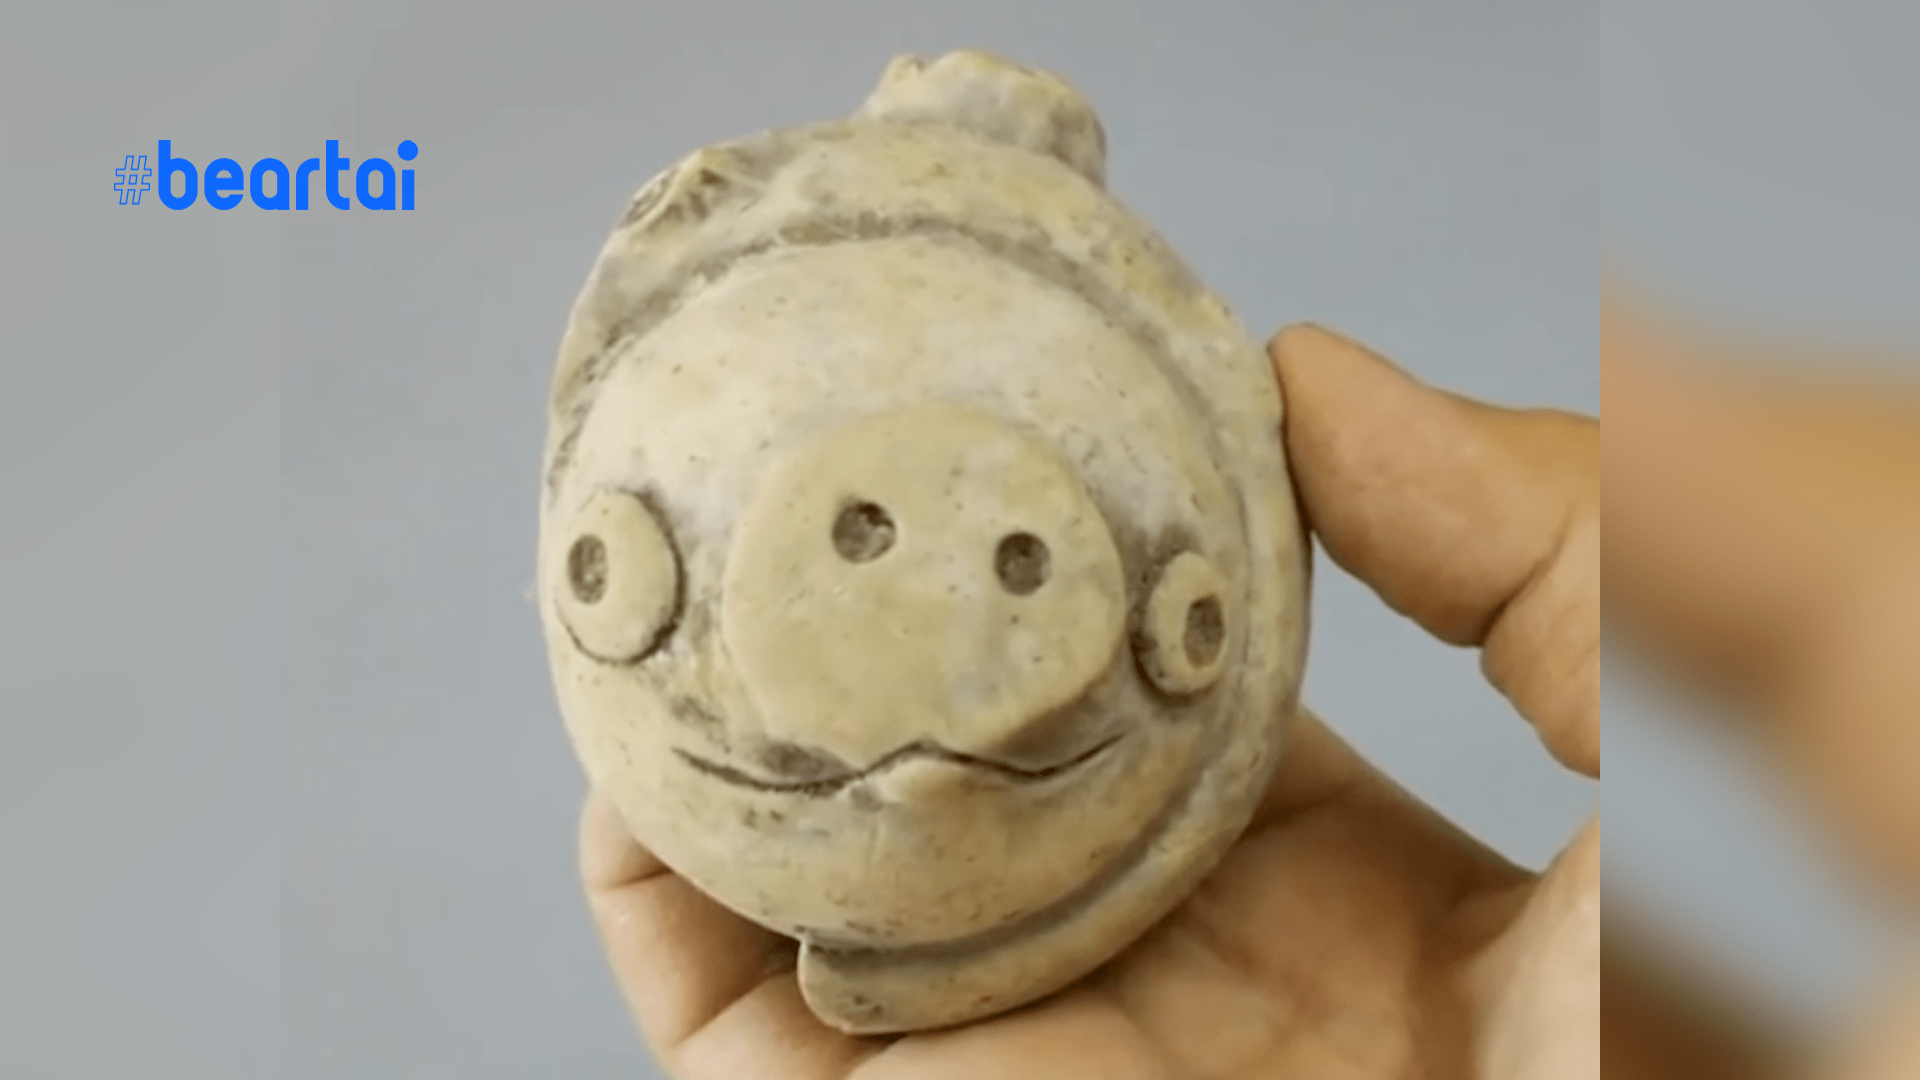 เดินทางข้ามเวลา? นักโบราณคดีค้นพบวัตถุโบราณหน้าตาเหมือน “หมูใน Angry Birds” อายุมากกว่า 3,000 ปี!